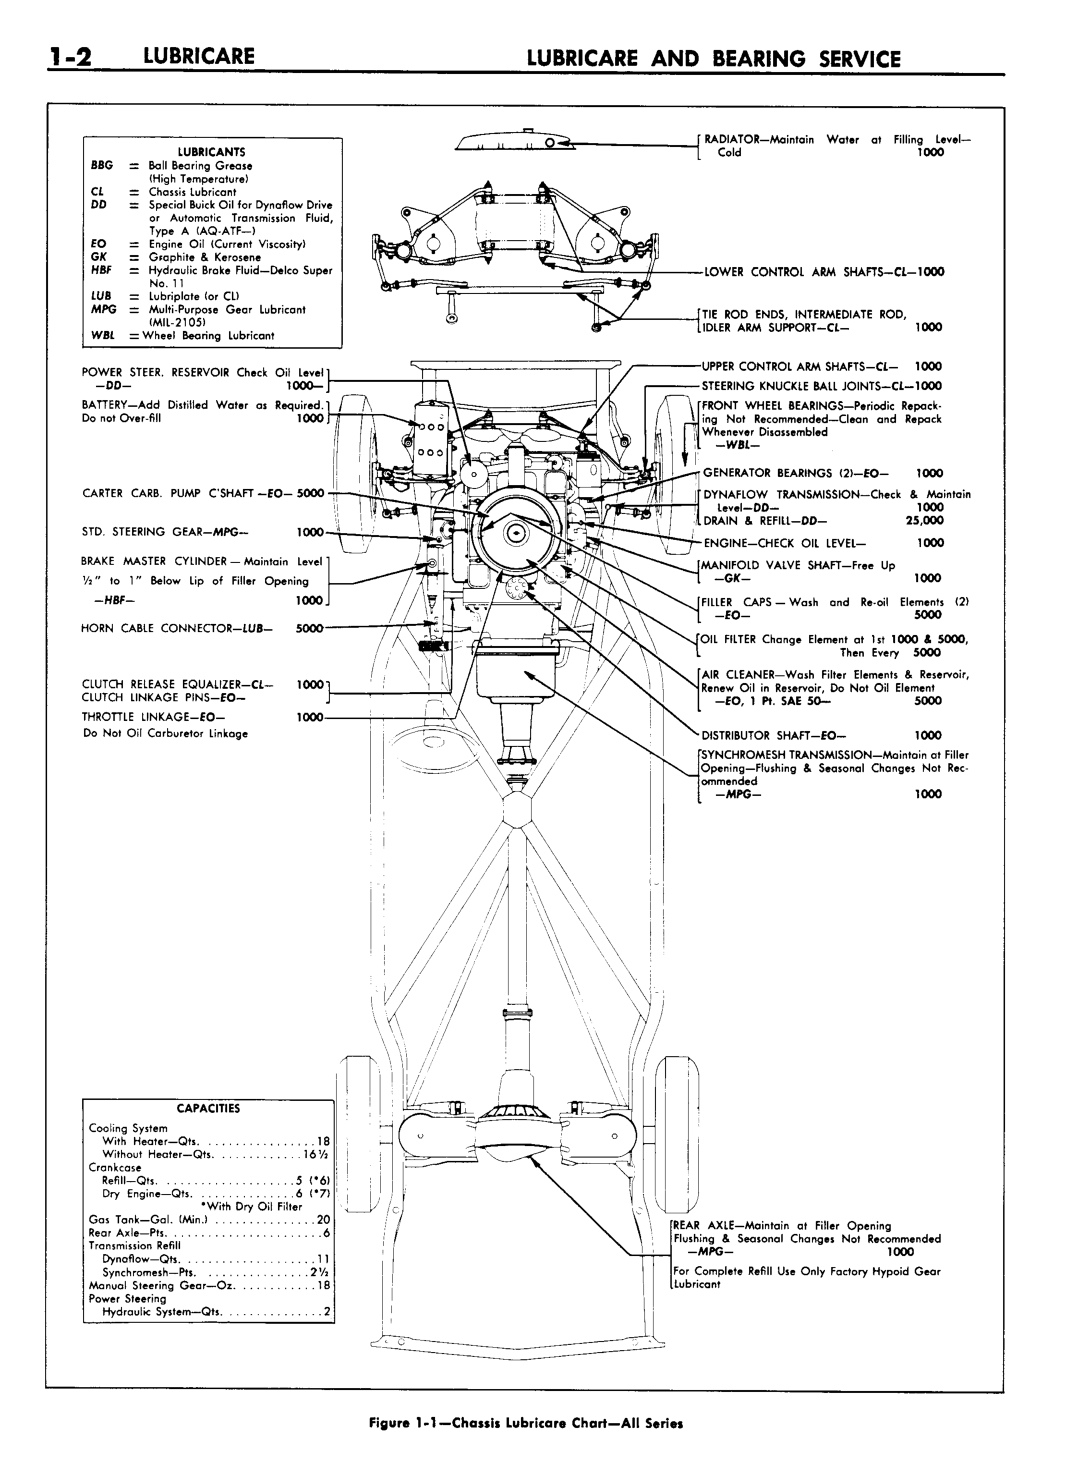 n_02 1957 Buick Shop Manual - Lubricare-002-002.jpg